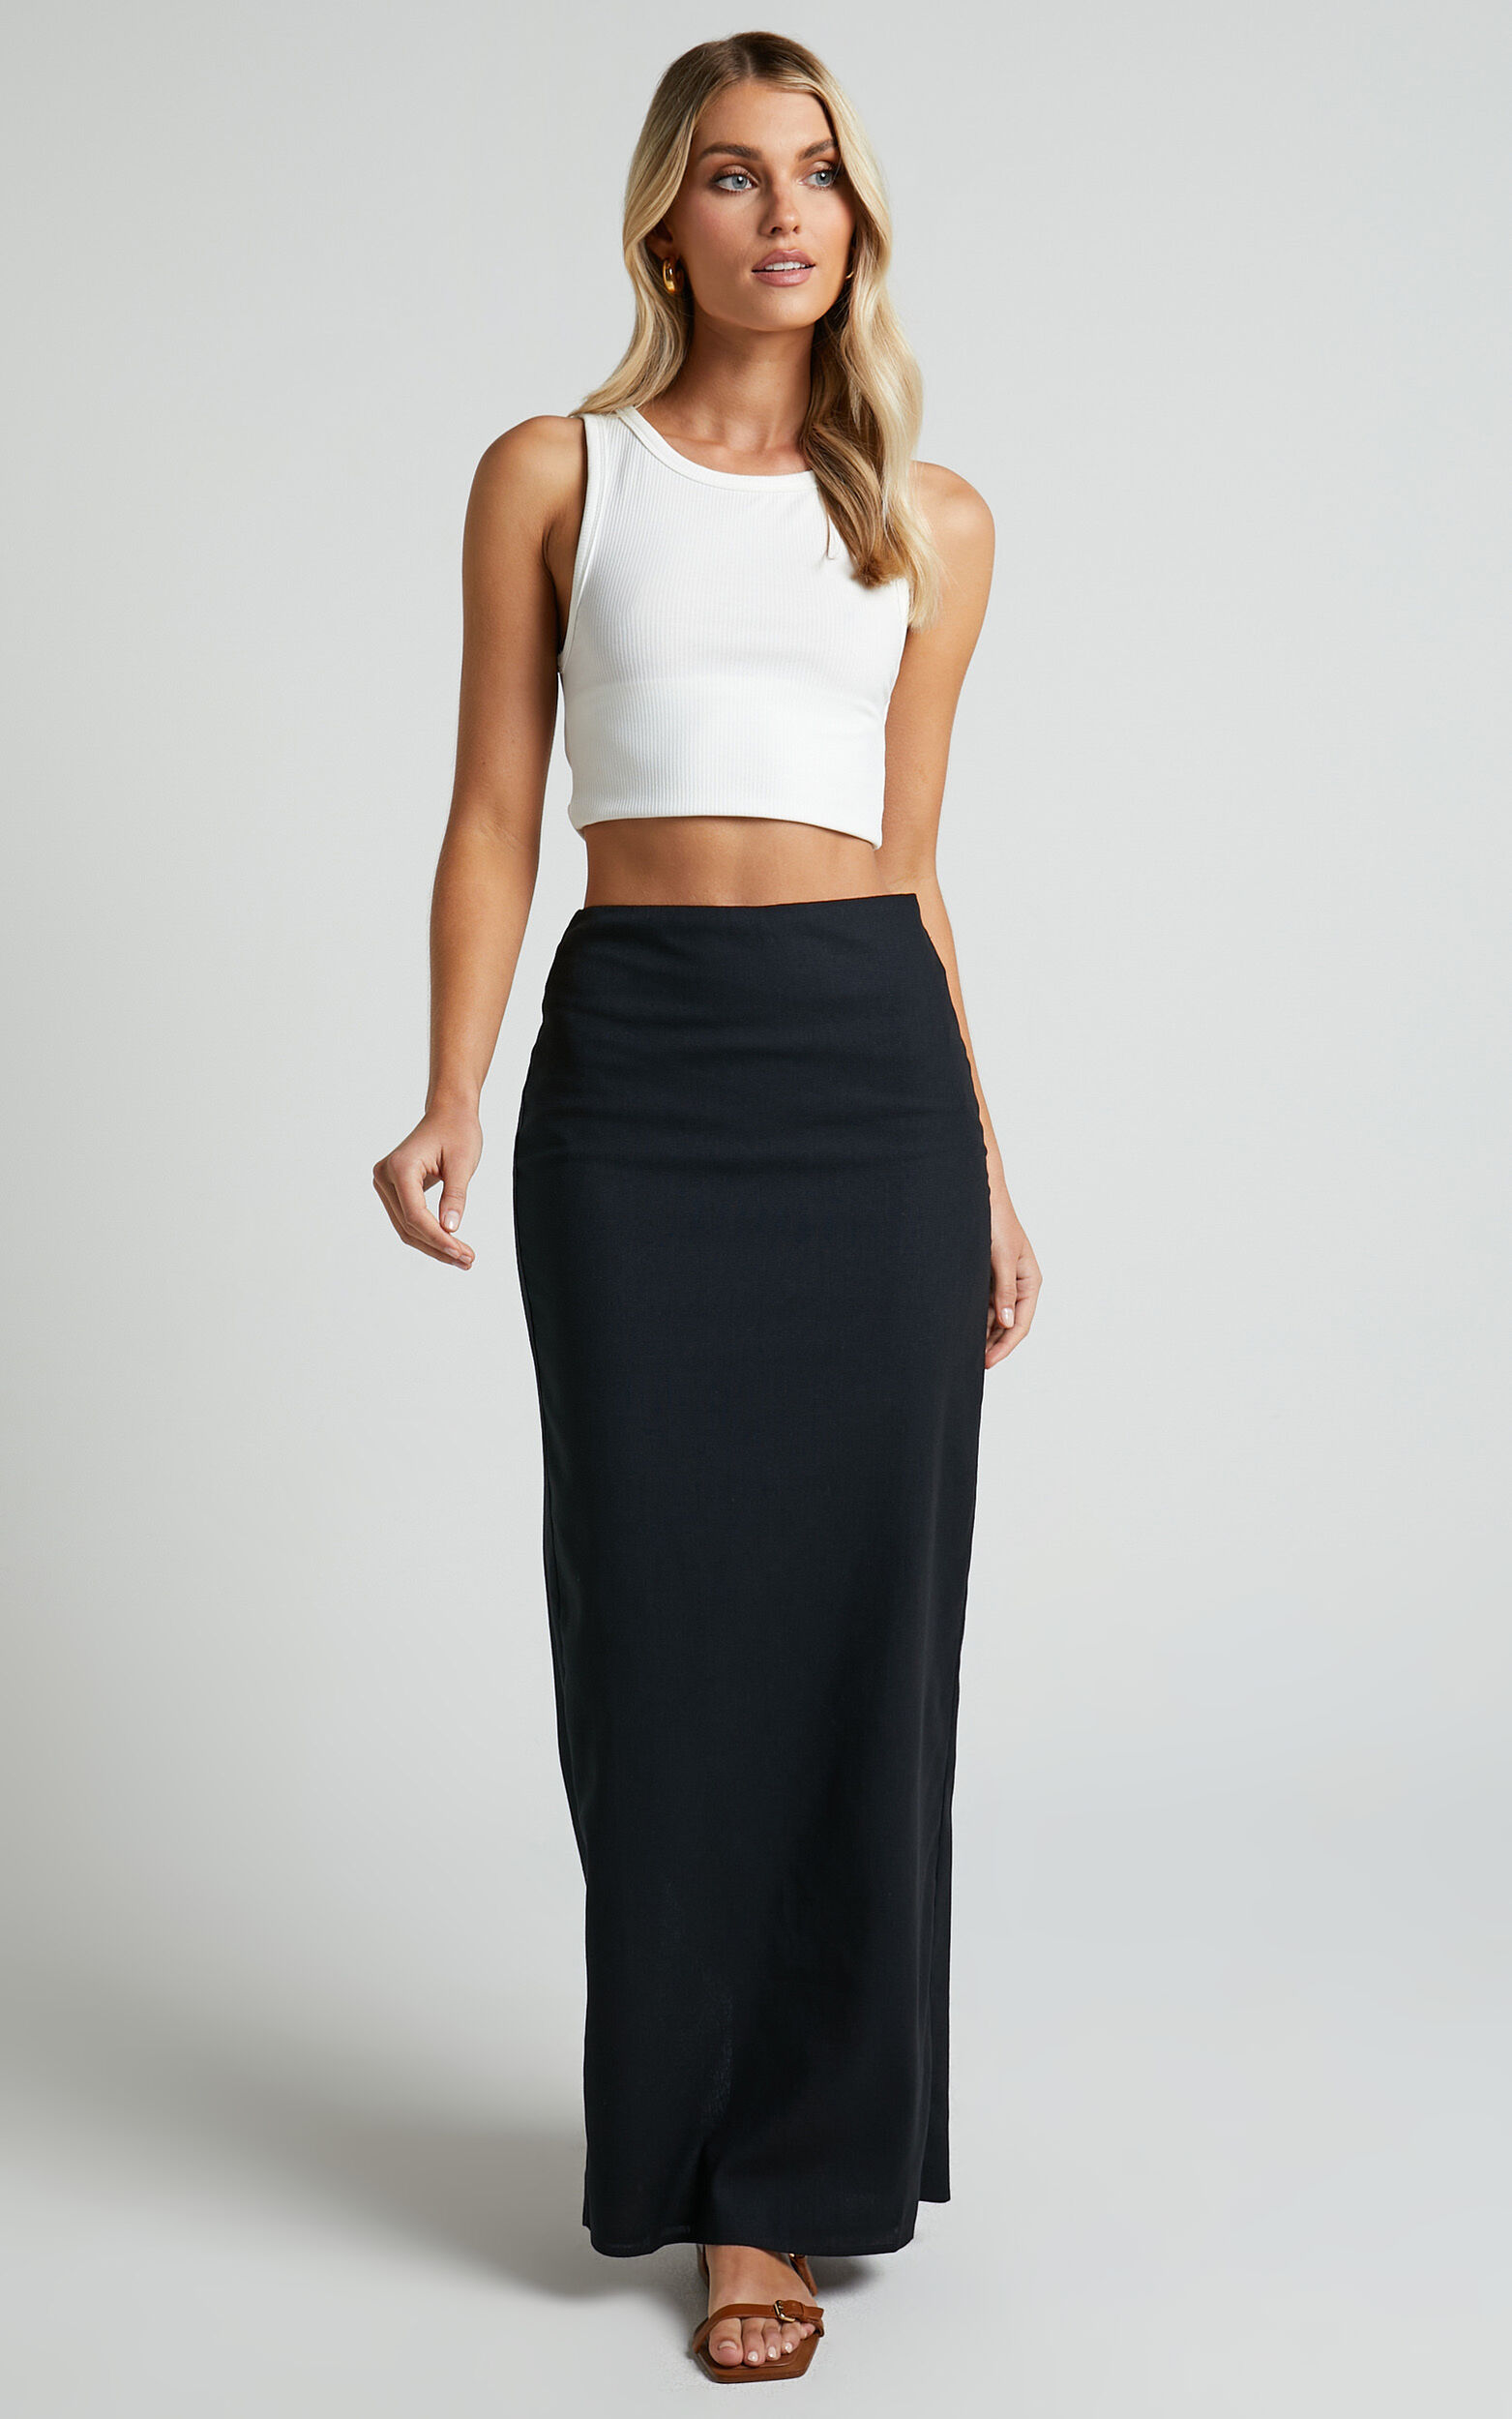 Vance Maxi Skirt - Linen Look Back Split Skirt in Black - 04, BLK1